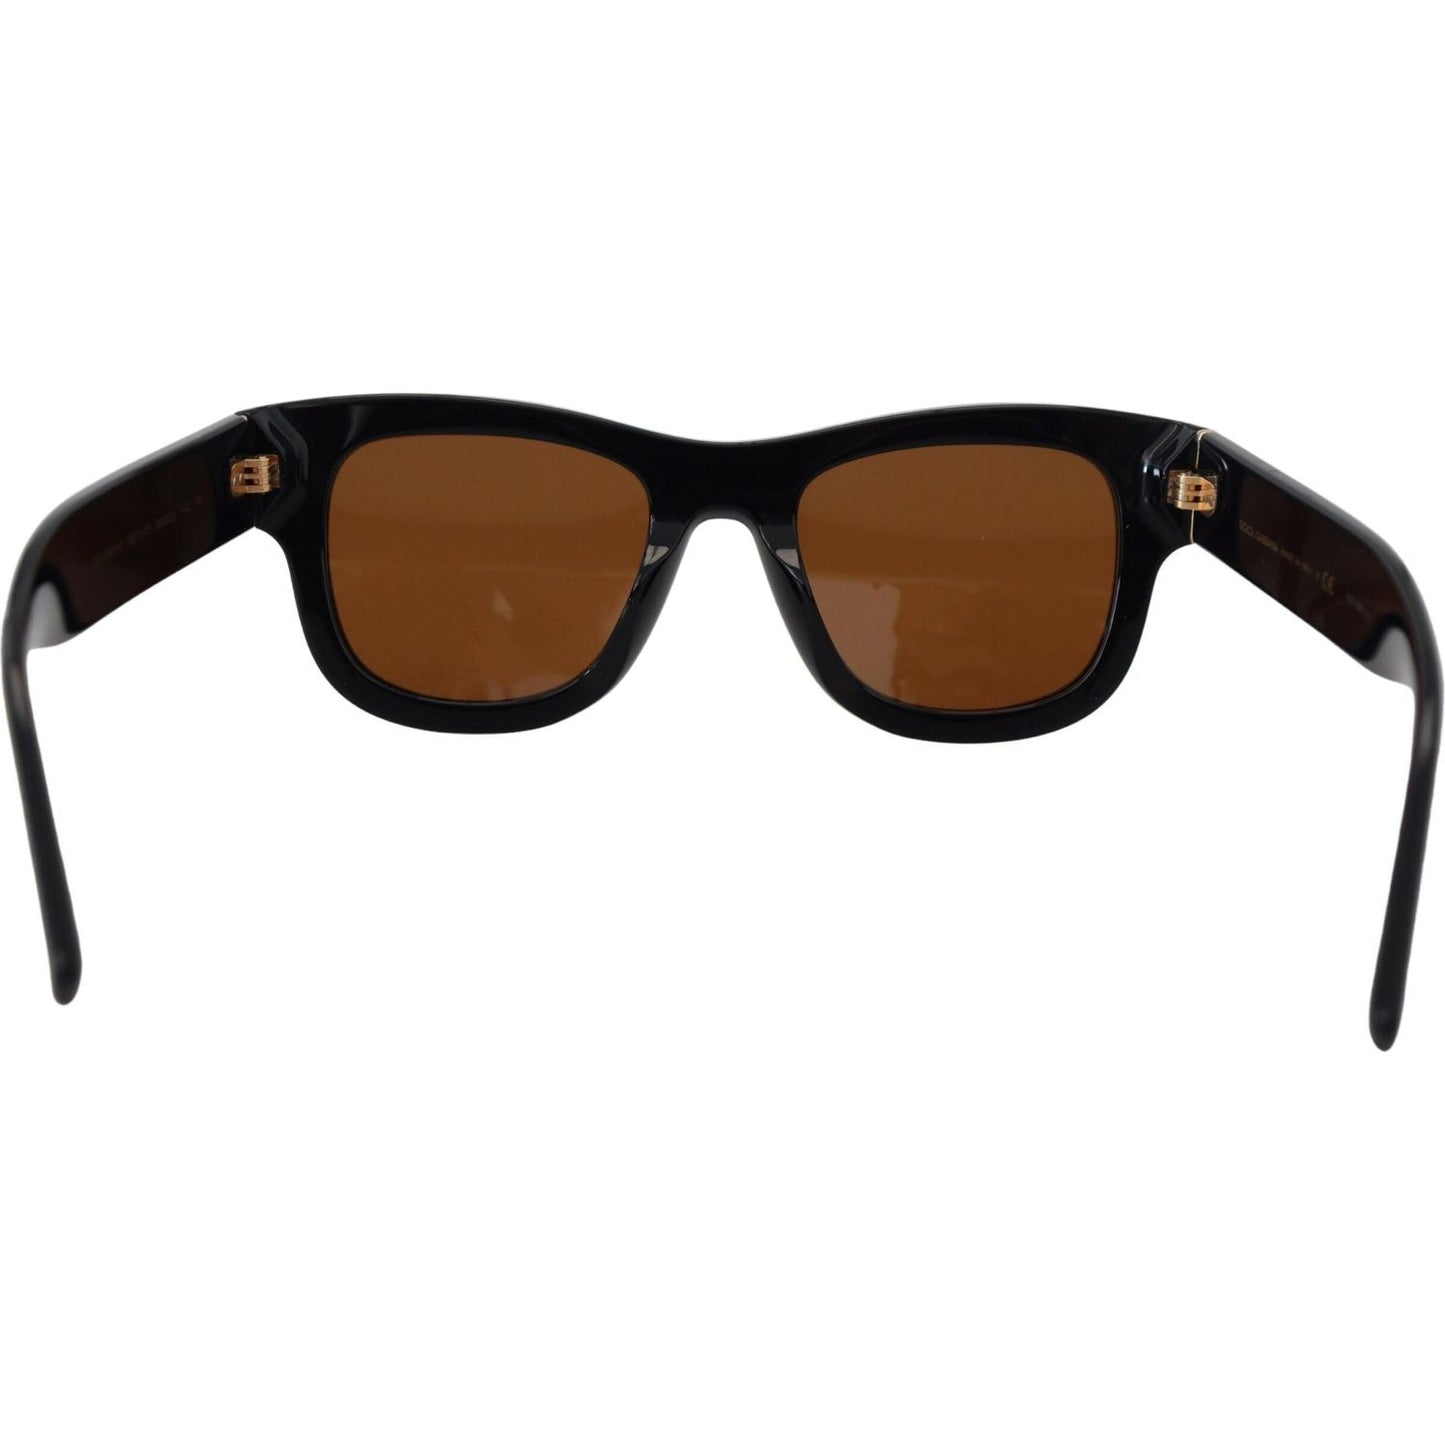 Dolce & GabbanaChic Brown Acetate SunglassesMcRichard Designer Brands£239.00